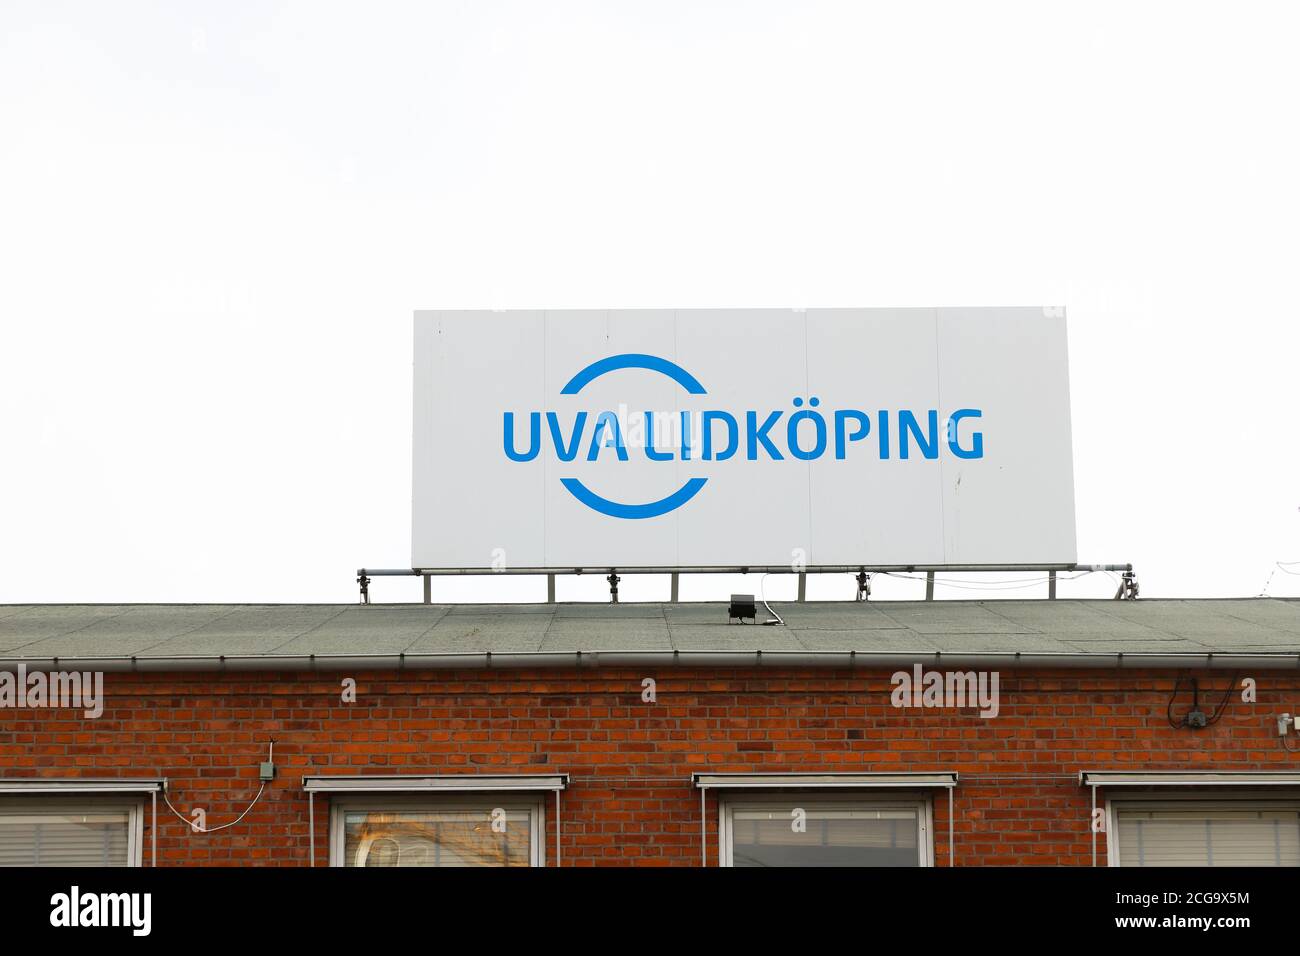 Lidkoping, Schweden - 24. Juni 2020: Dachschild für die UVA Lidkoping ist ein weltweit führender Anbieter von hochpräzisen Schleifmaschinen. Stockfoto